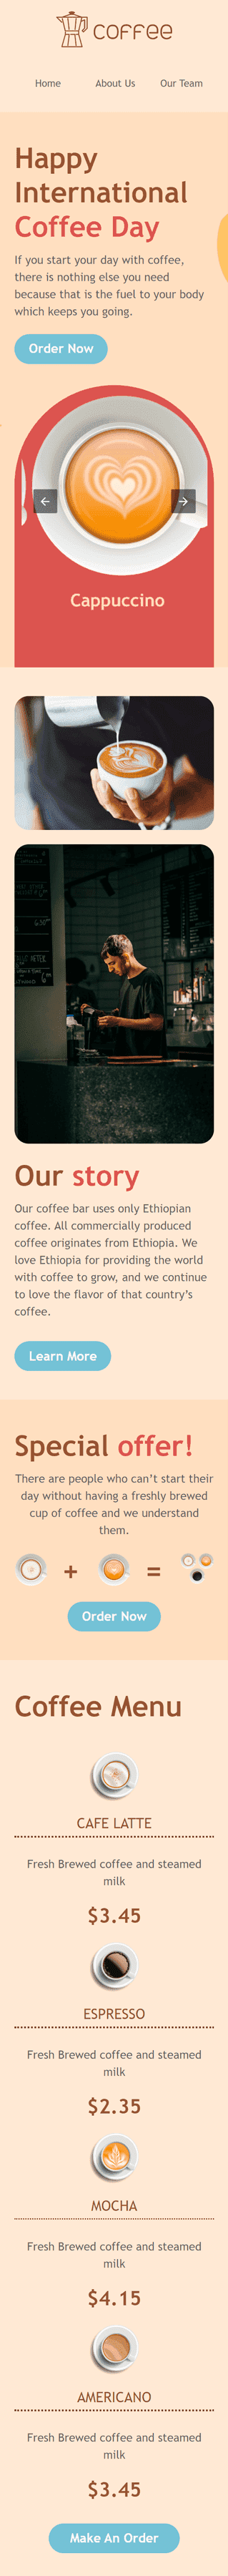 Modèle de courrier électronique Journée internationale du café «Heures heureuses!» pour le secteur Boissons Affichage mobile